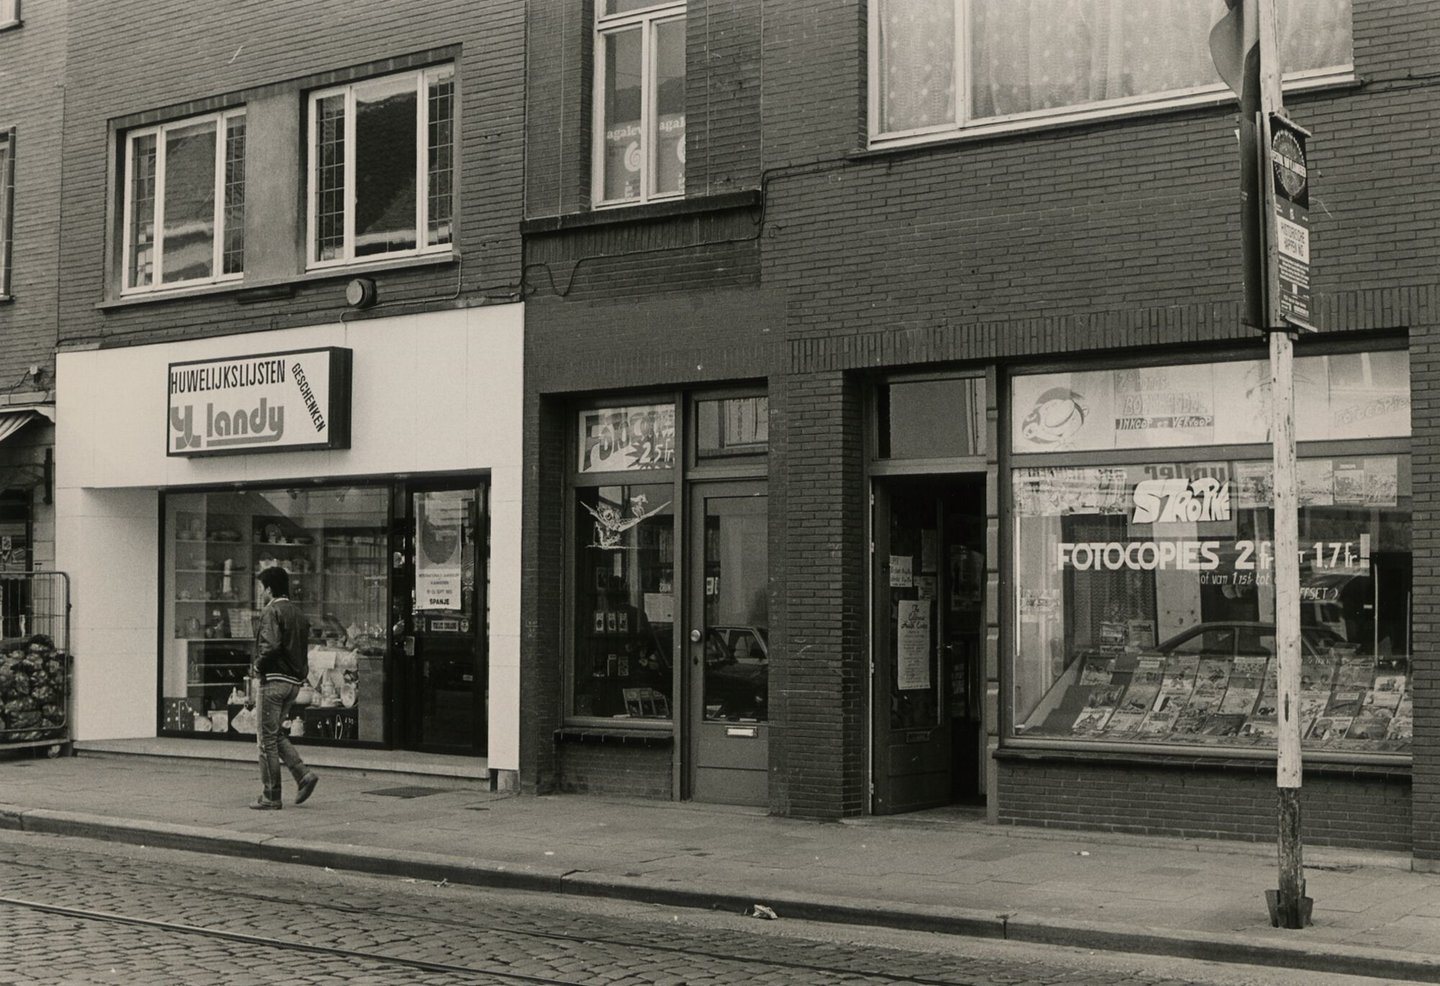 Etalage van woonwinkel Landy en een winkel van stripverhalen in Gent